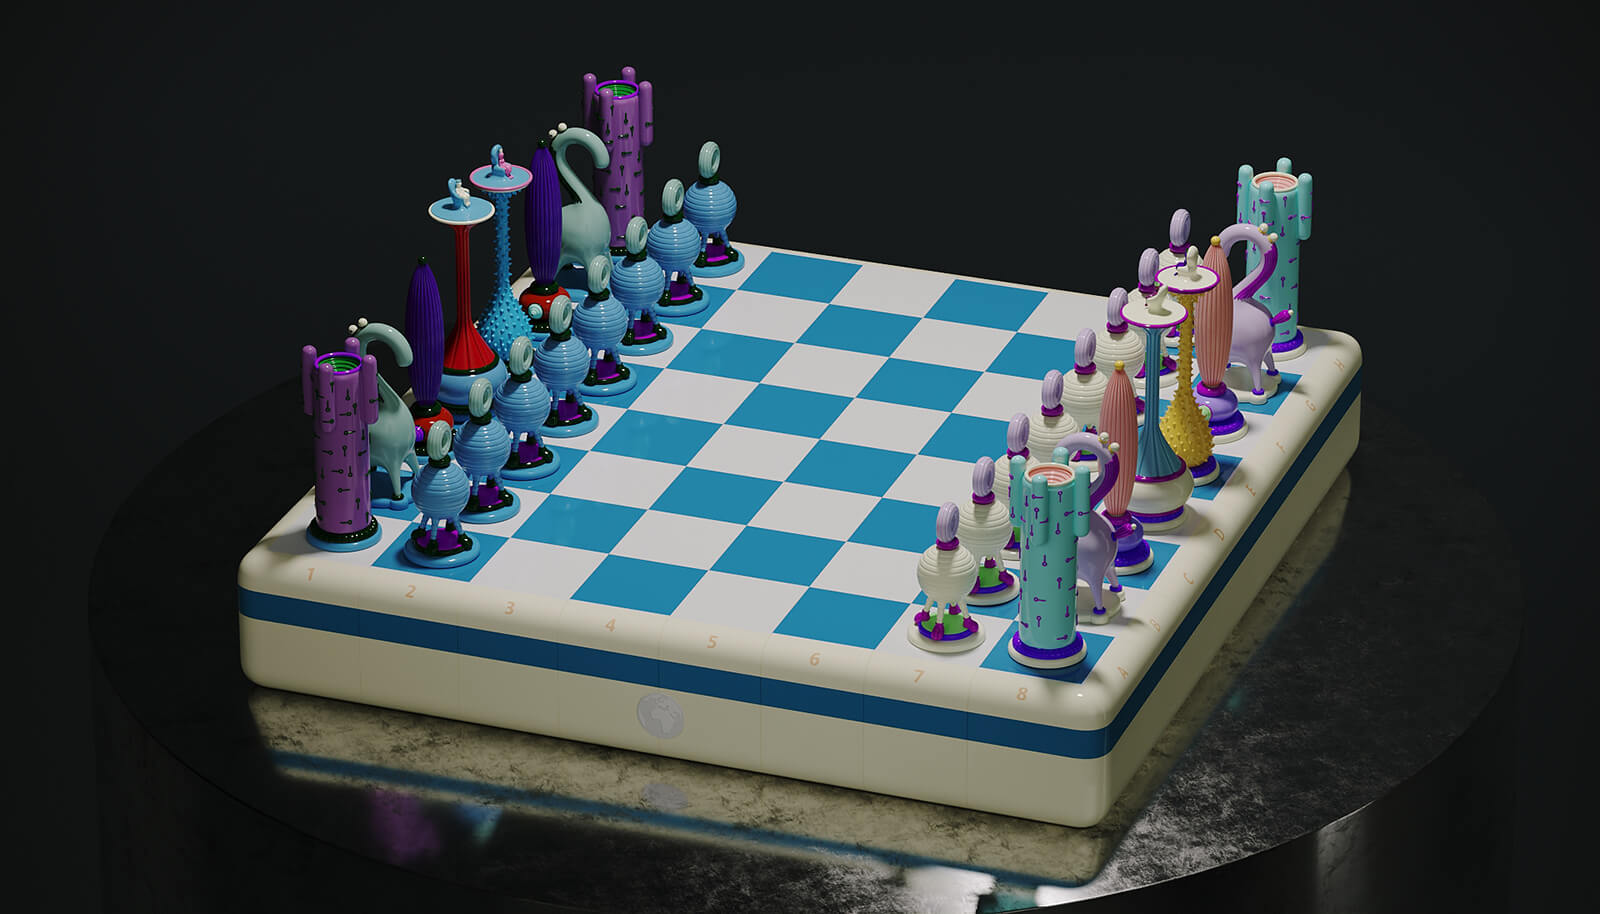 Another Kingdom: Last Stage es un juego de ajedrez que teje narrativas de triunfo alejando conflictosImagen: Cortesía de Taras Yoom